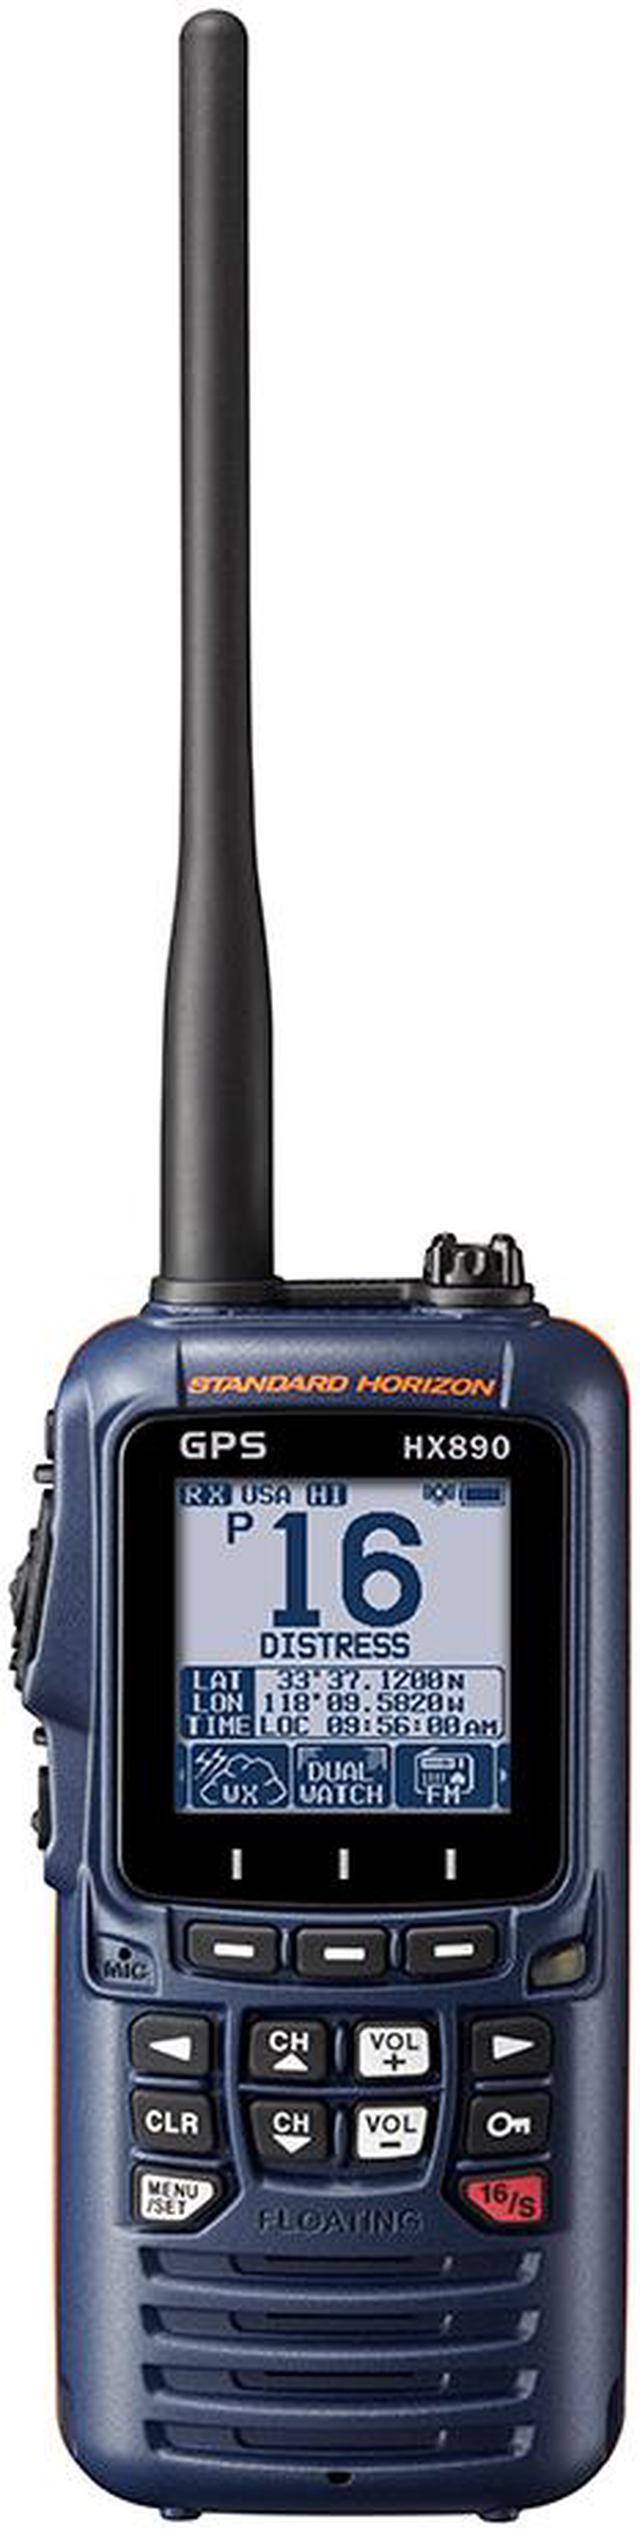 Standard Horizon HX890NB Vhf-hh, Watt, W/gpsfm Rcvr, Blue